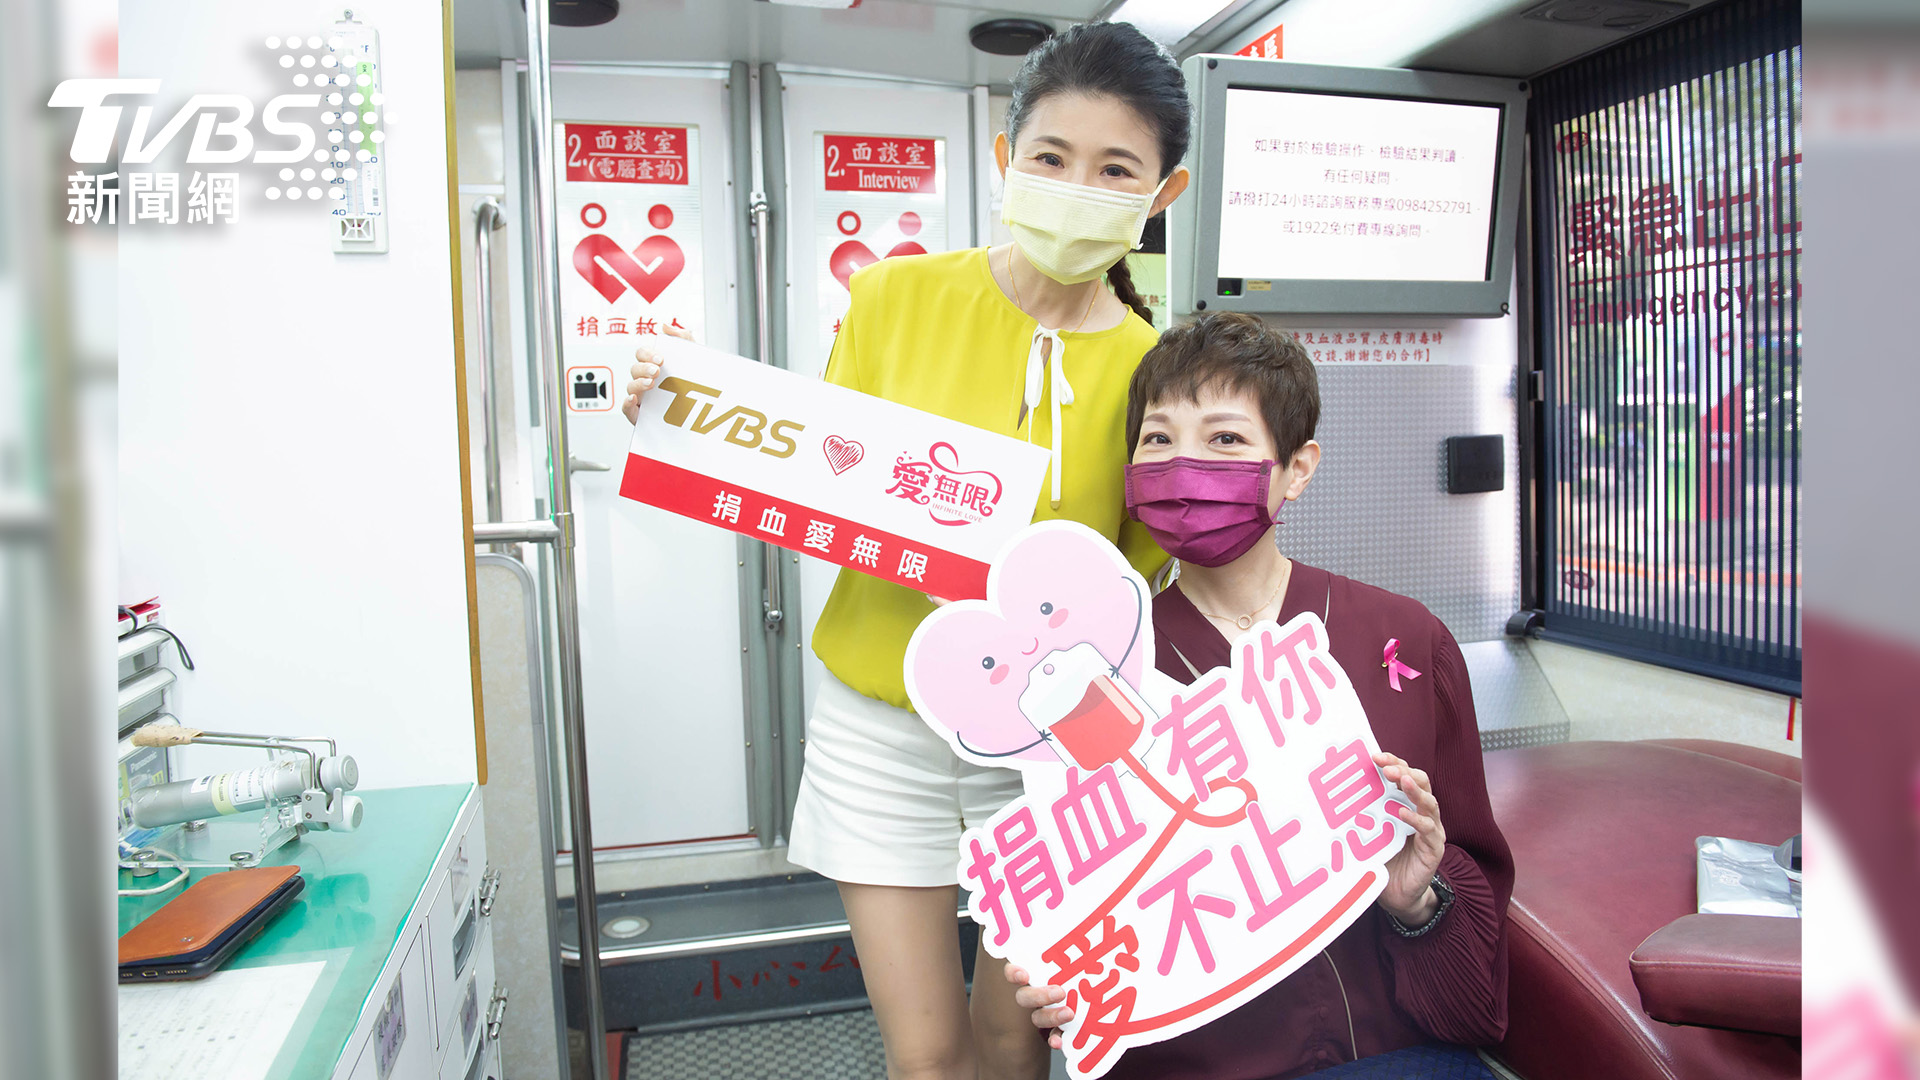 主播吳安琪與主持人蘇宗怡兩人一起挽起袖子捐血 TVBS 28周年台慶公益活動 蘇宗怡吳安琪挽袖捐血獻愛心